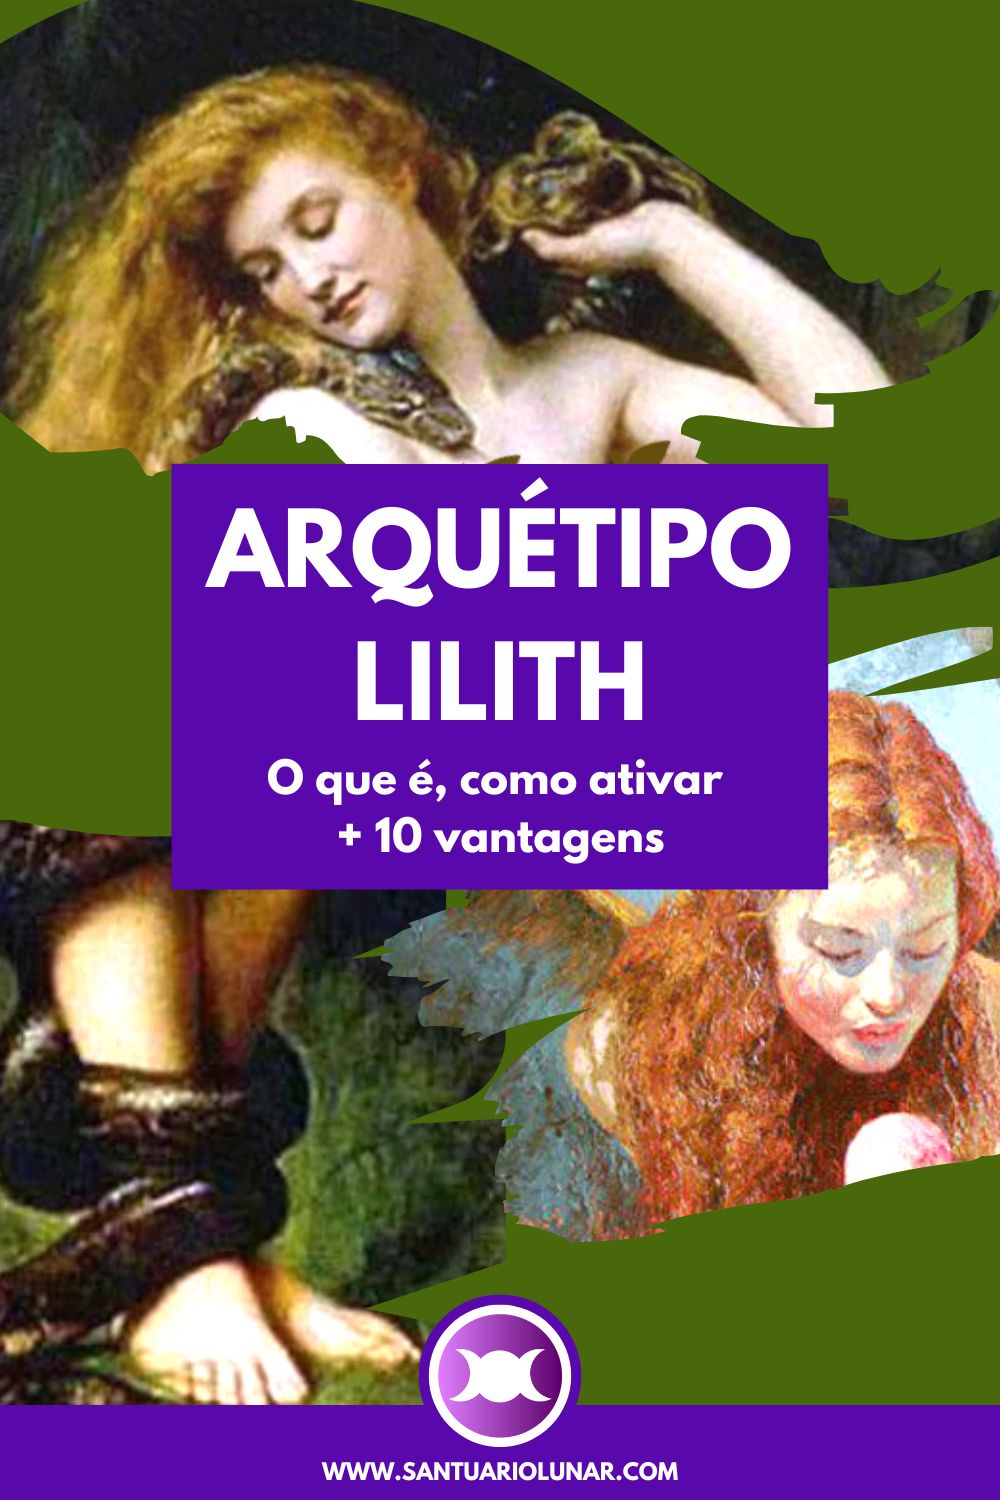 Arquétipo Lilith - Pinterest